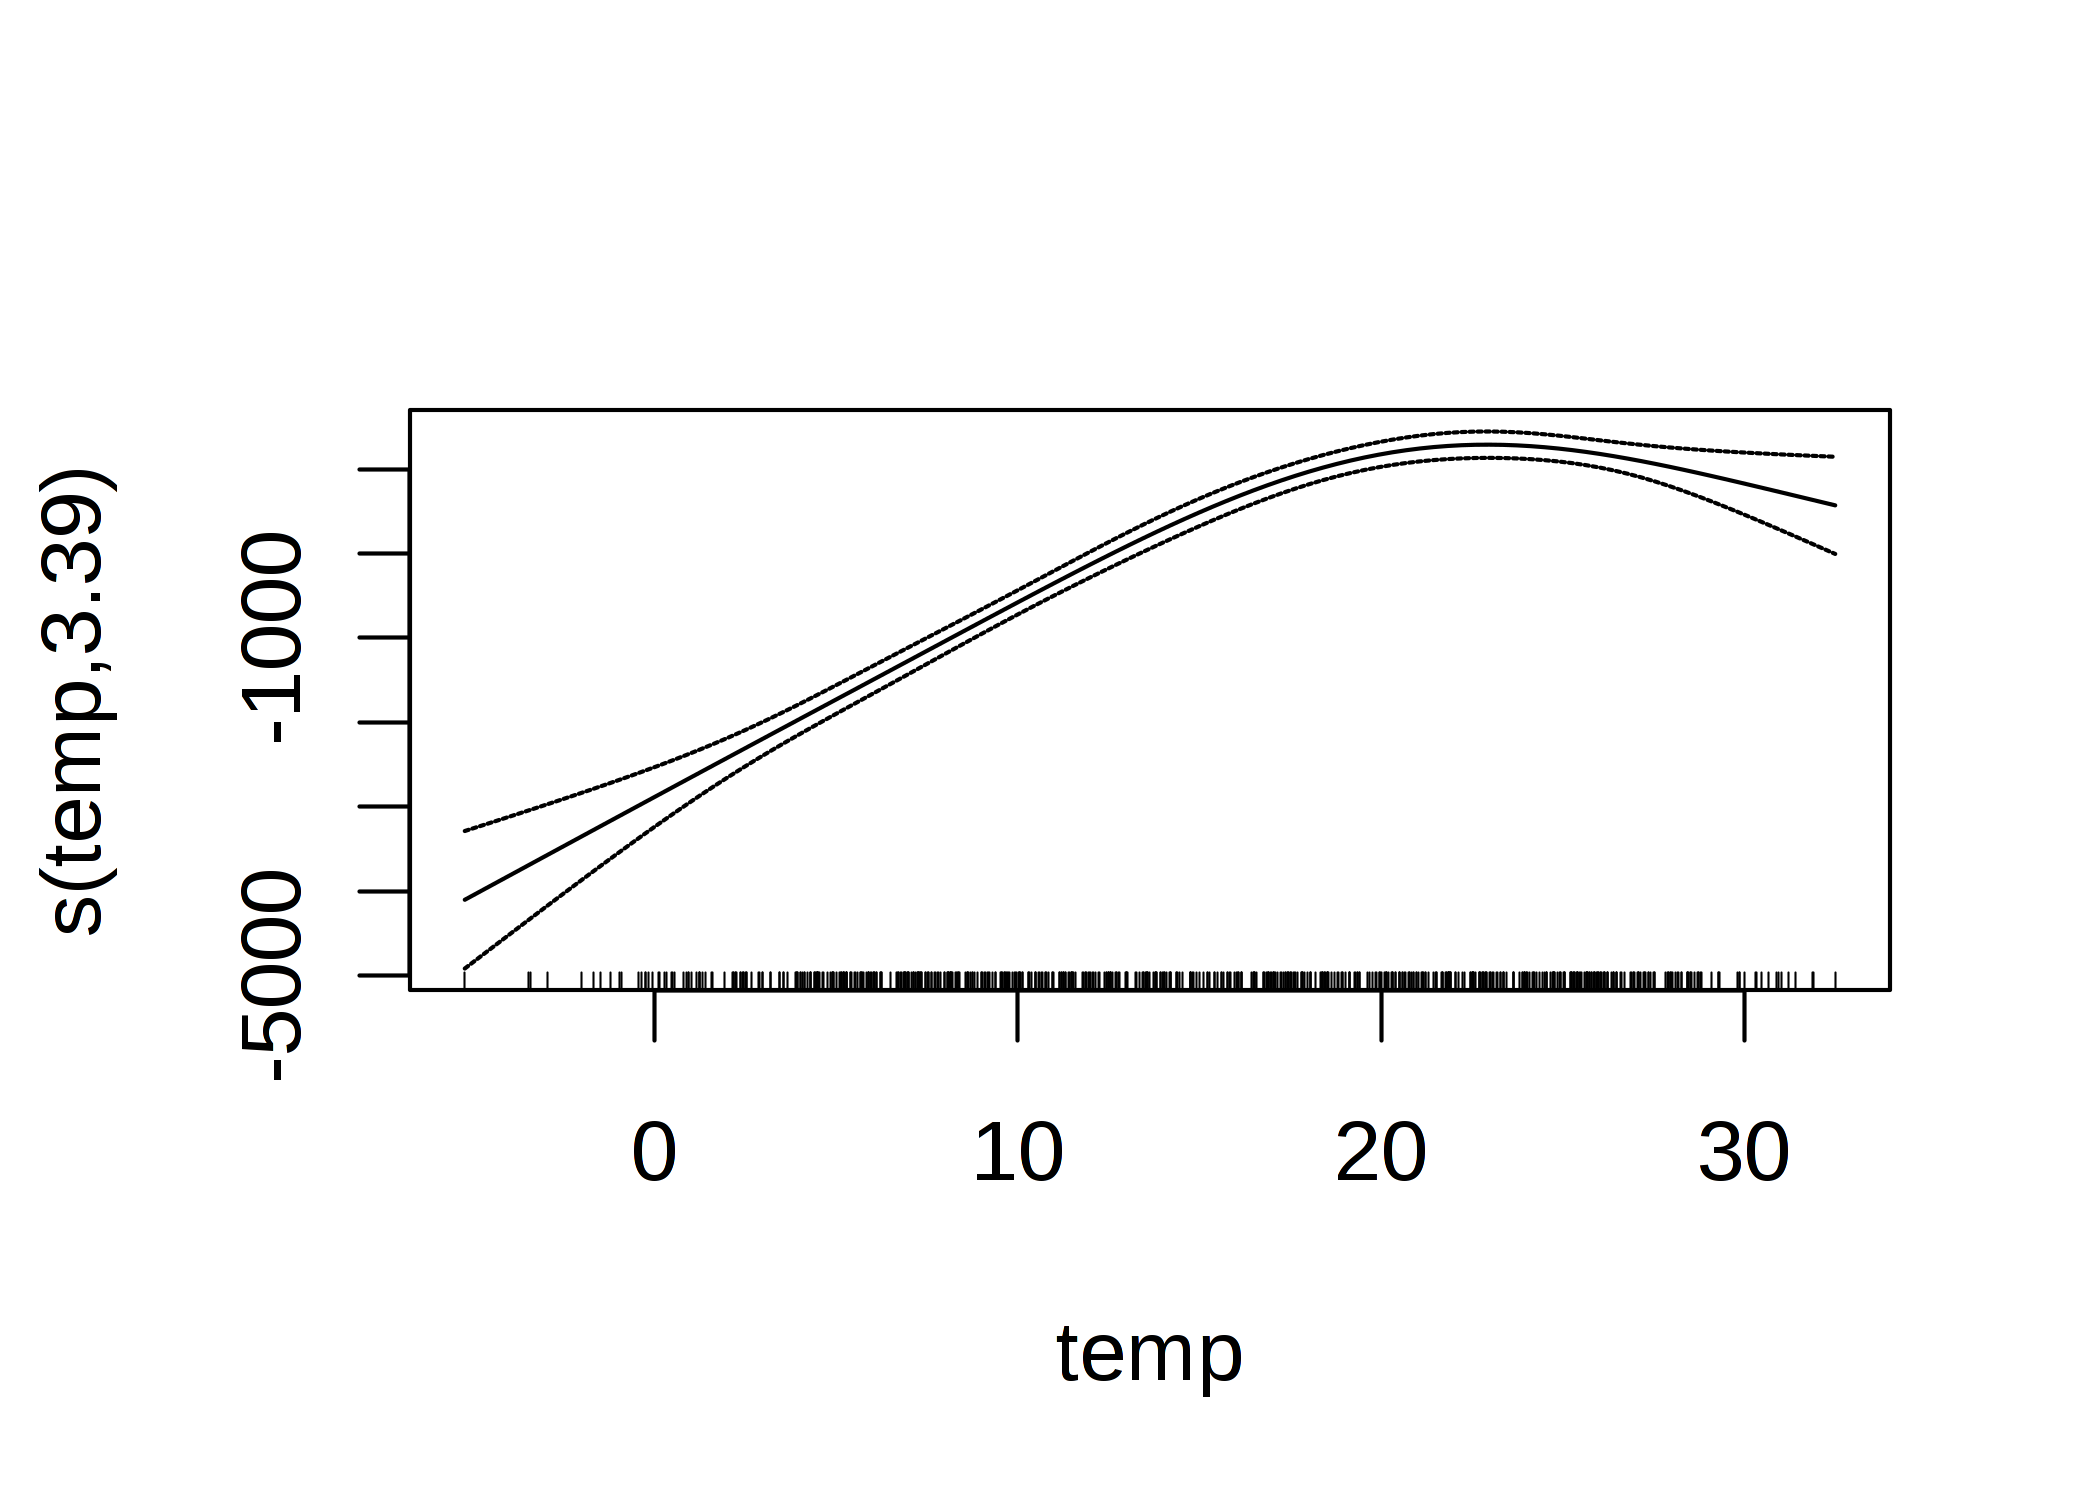 レンタル自転車数を予測するための温度のGAM特徴量効果（温度のみを特徴量として使用）。